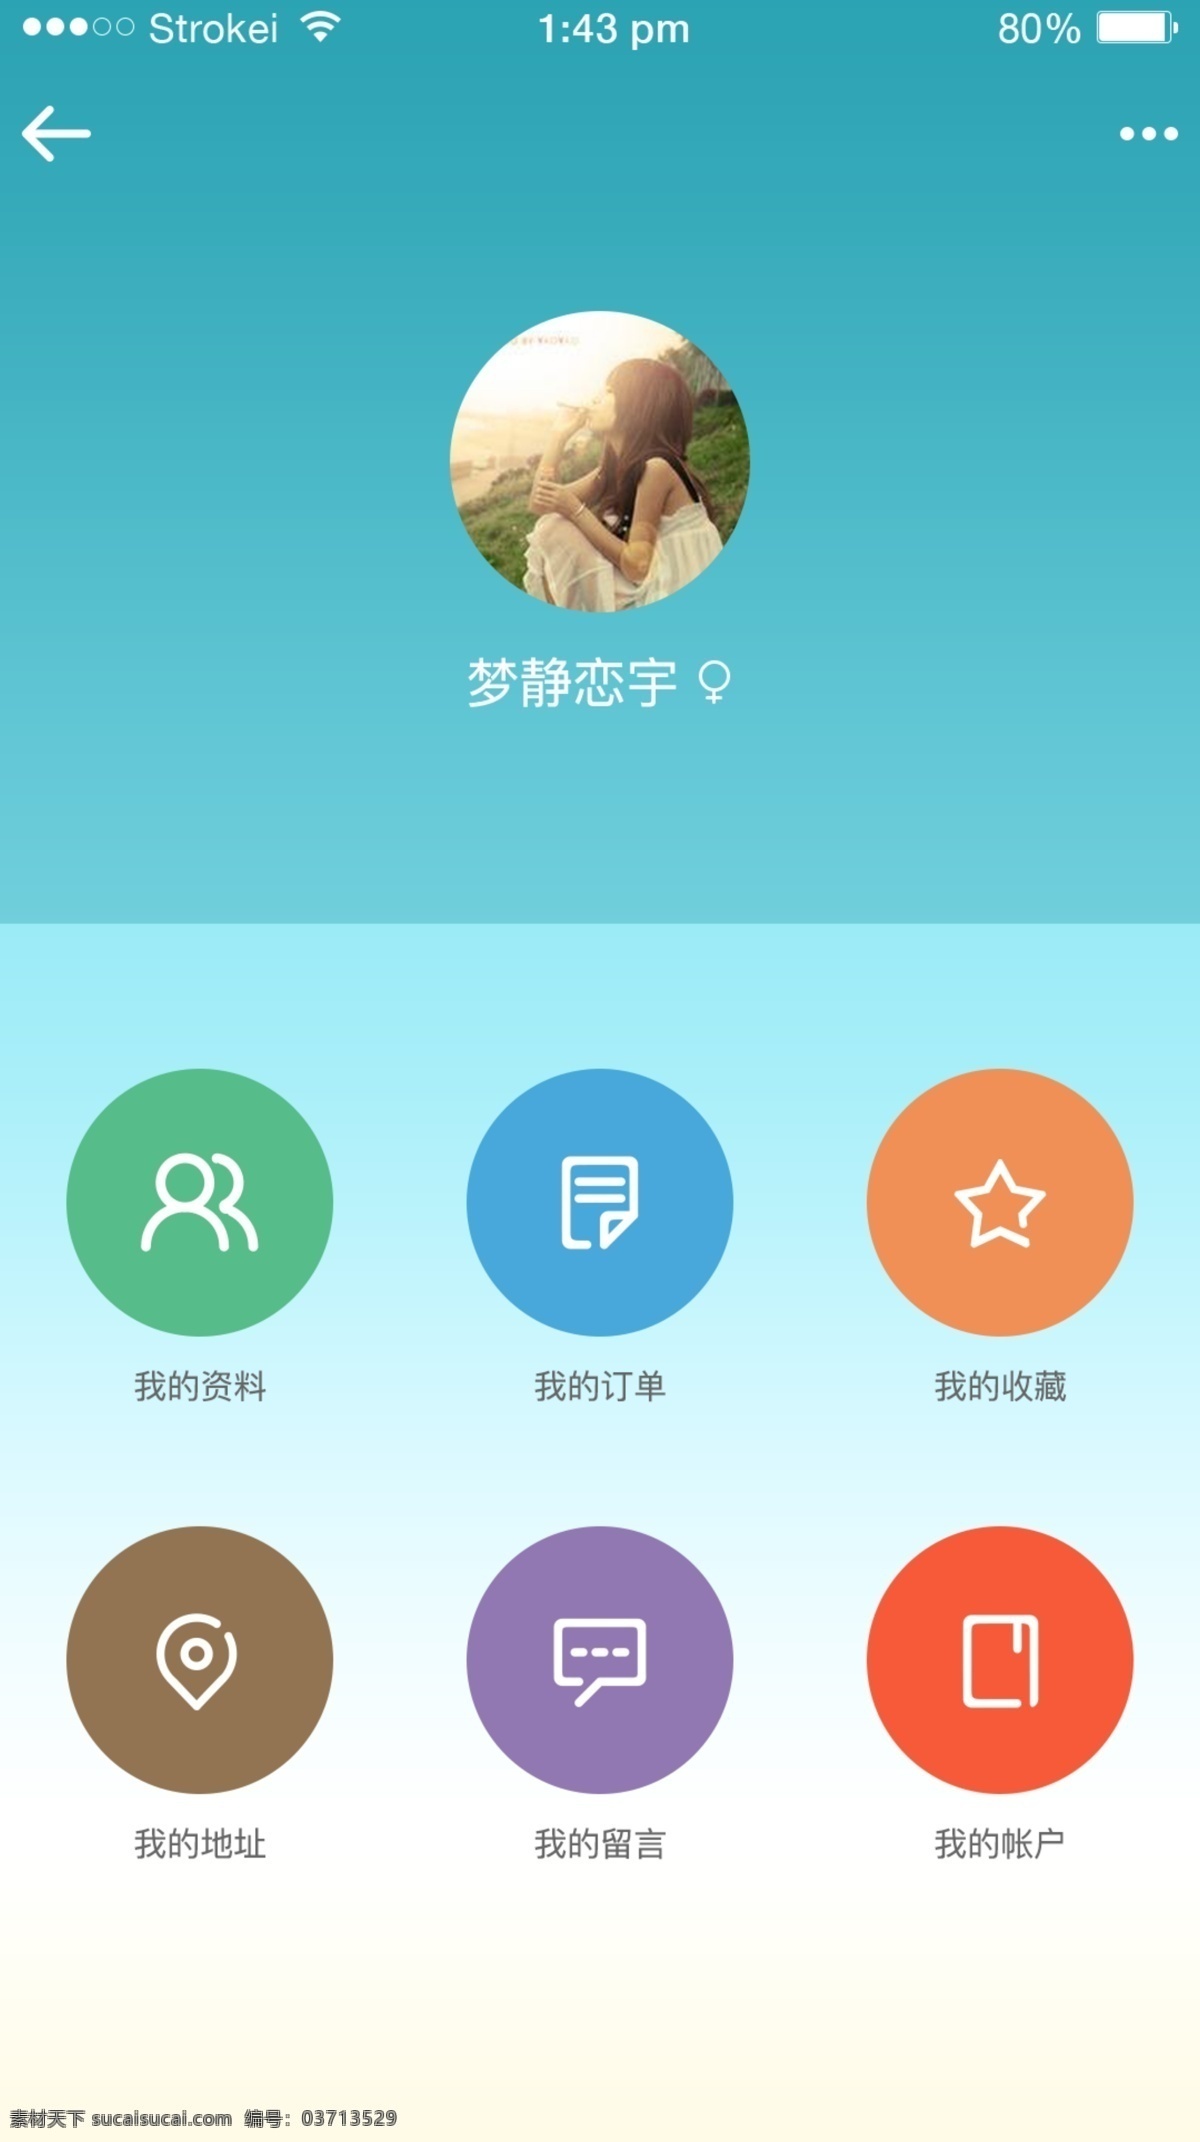 个人主页 app 界面设计 扁平化图标 iphone6p 蓝色 菜单 小清新 青色 天蓝色